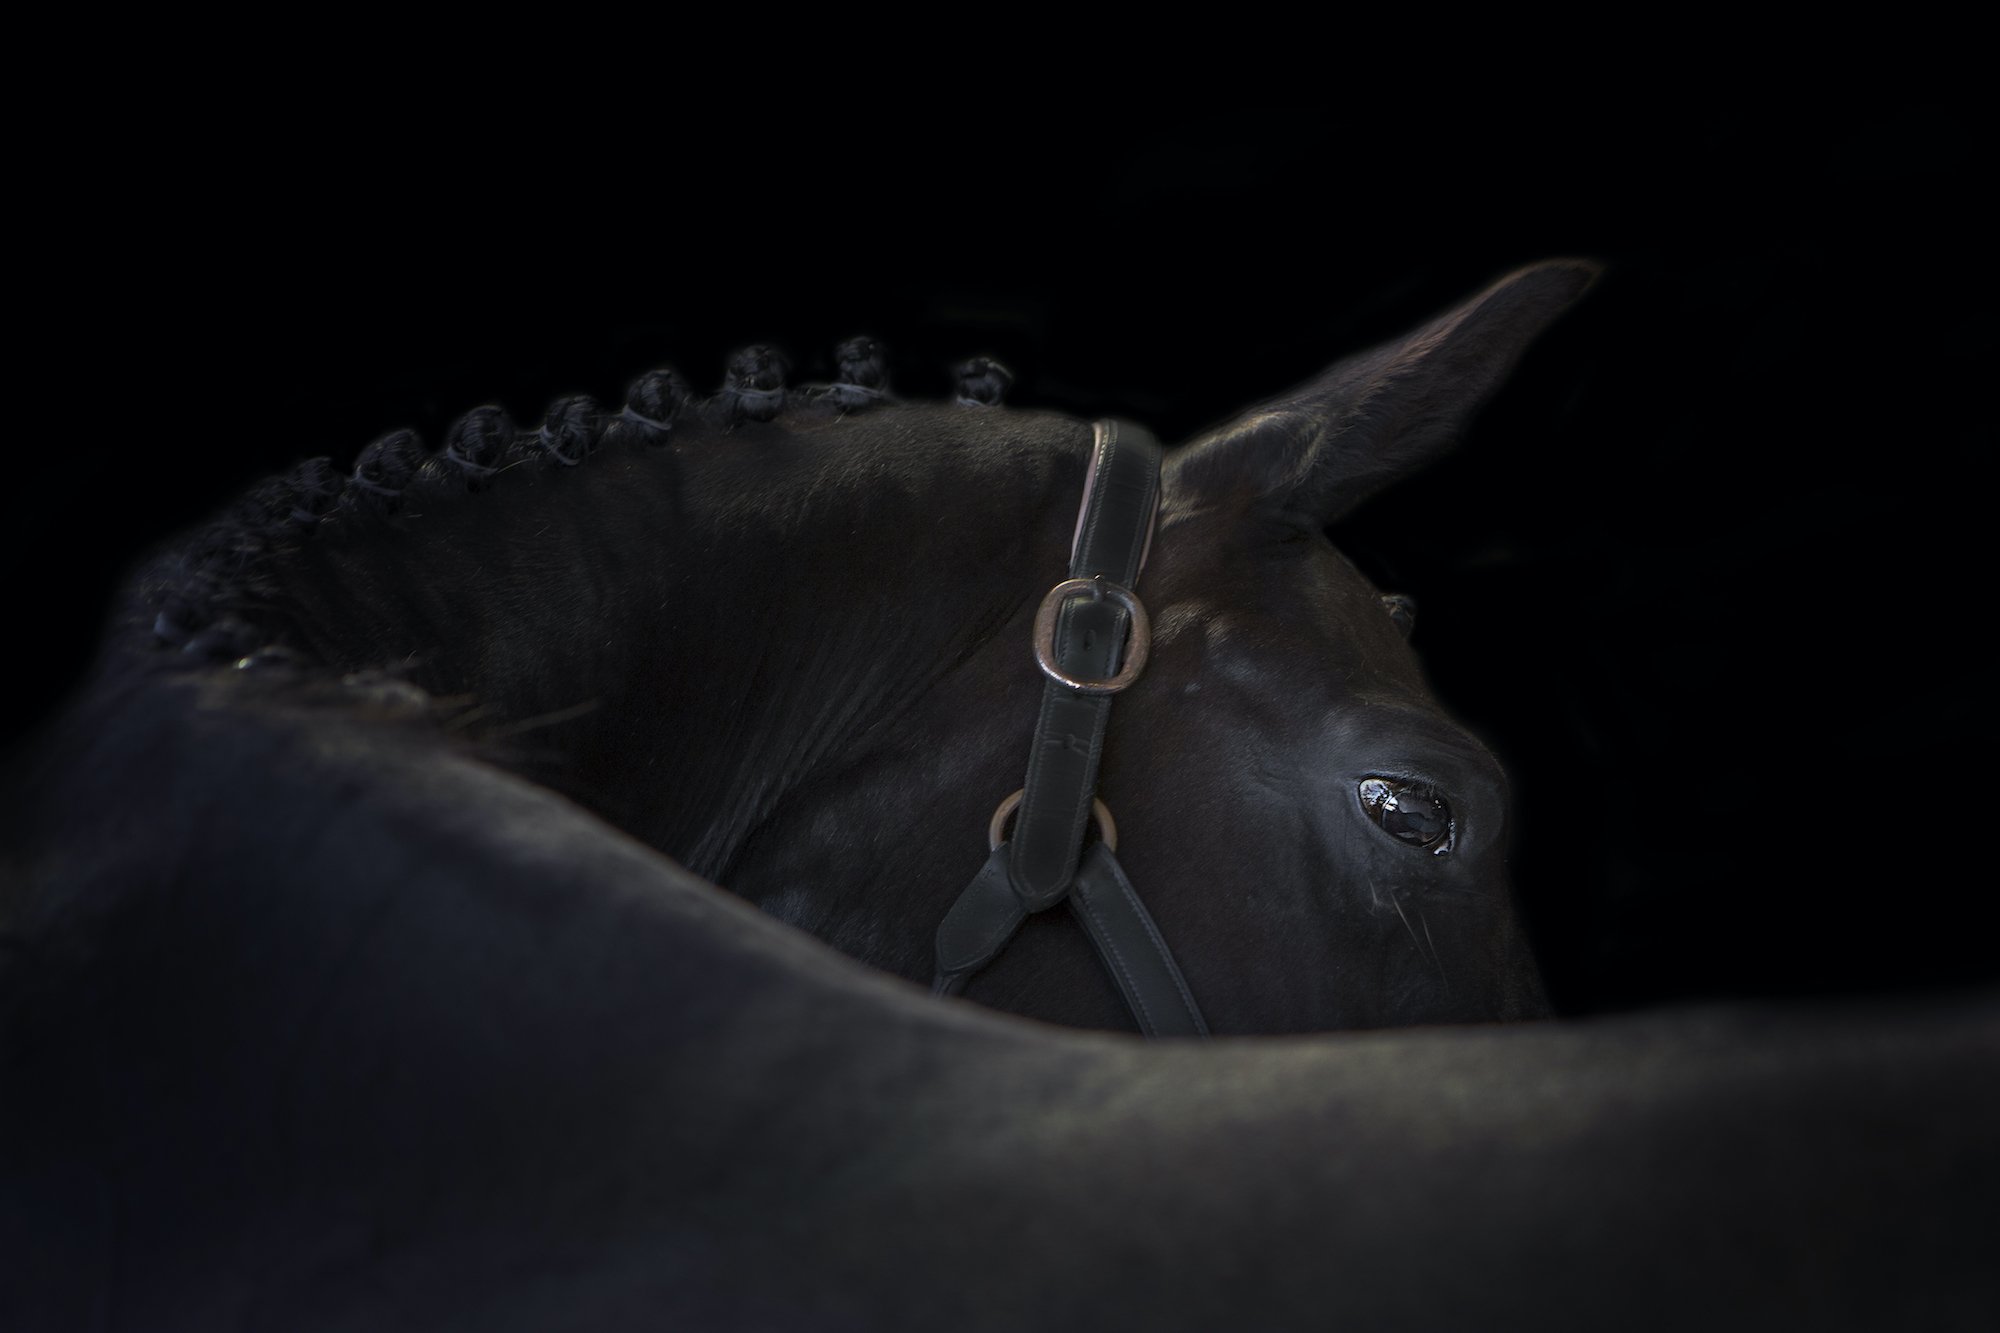 Skewbald Black Background Horse Photography Emma Lowe Photography